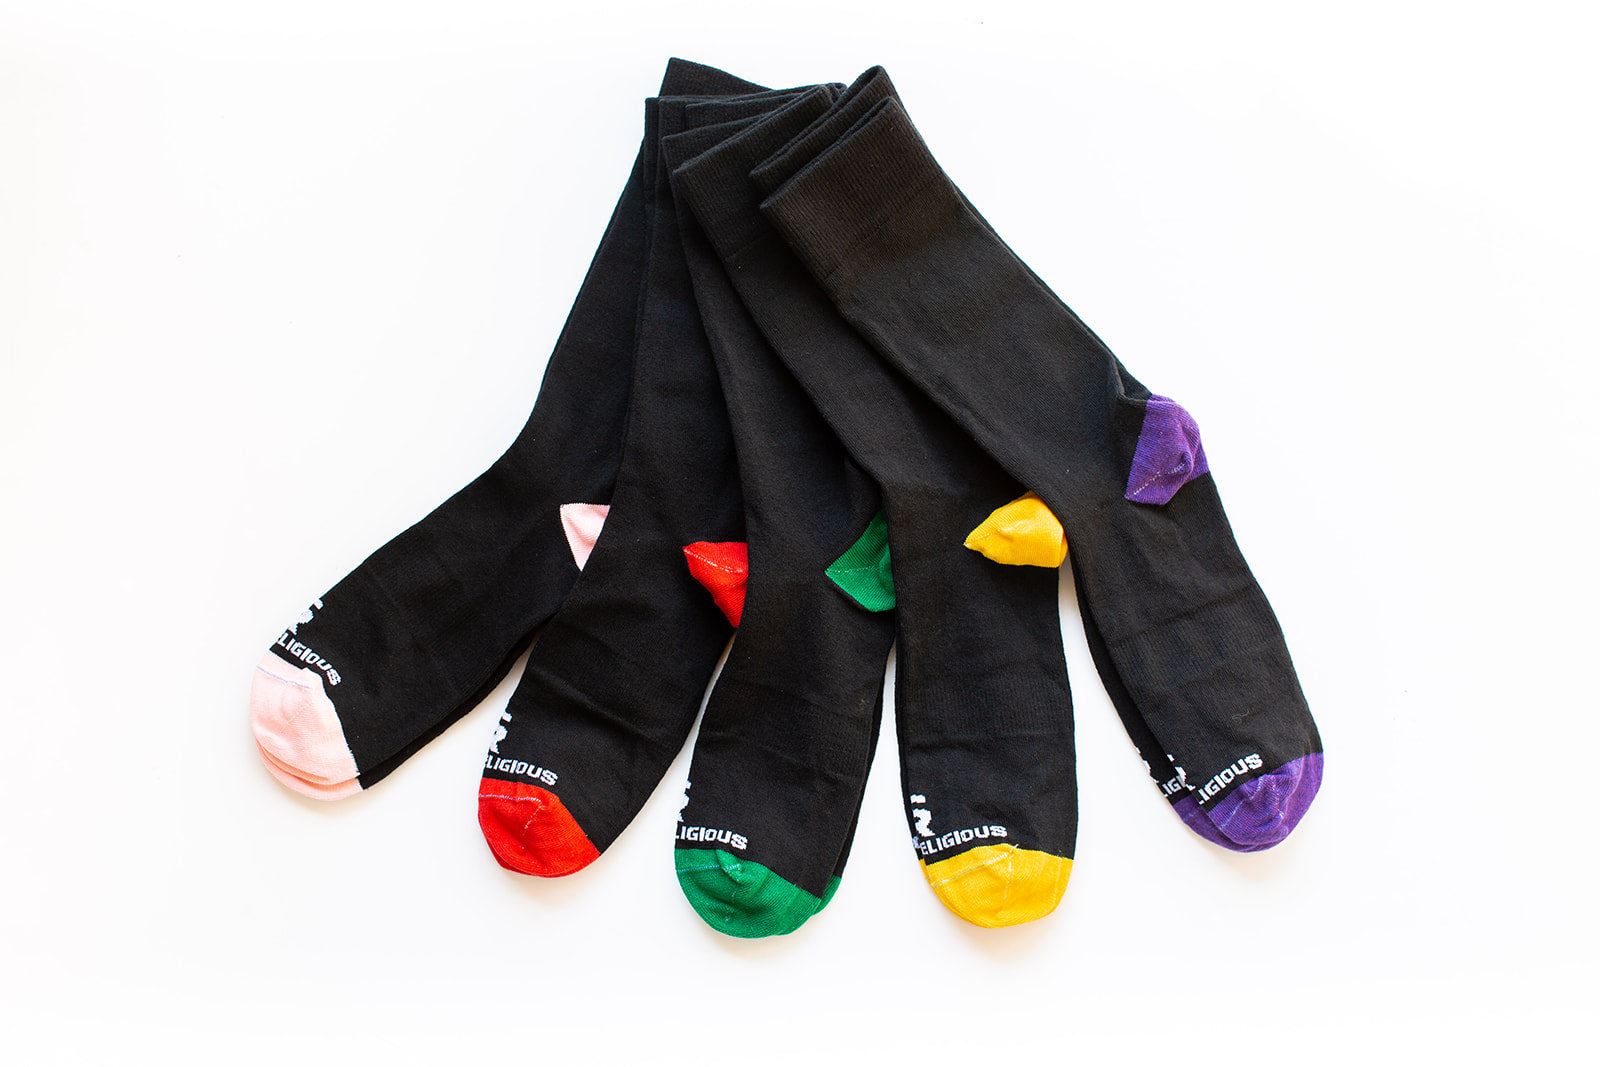 Liturgical Living Dress Socks, 5 Pack of Socks